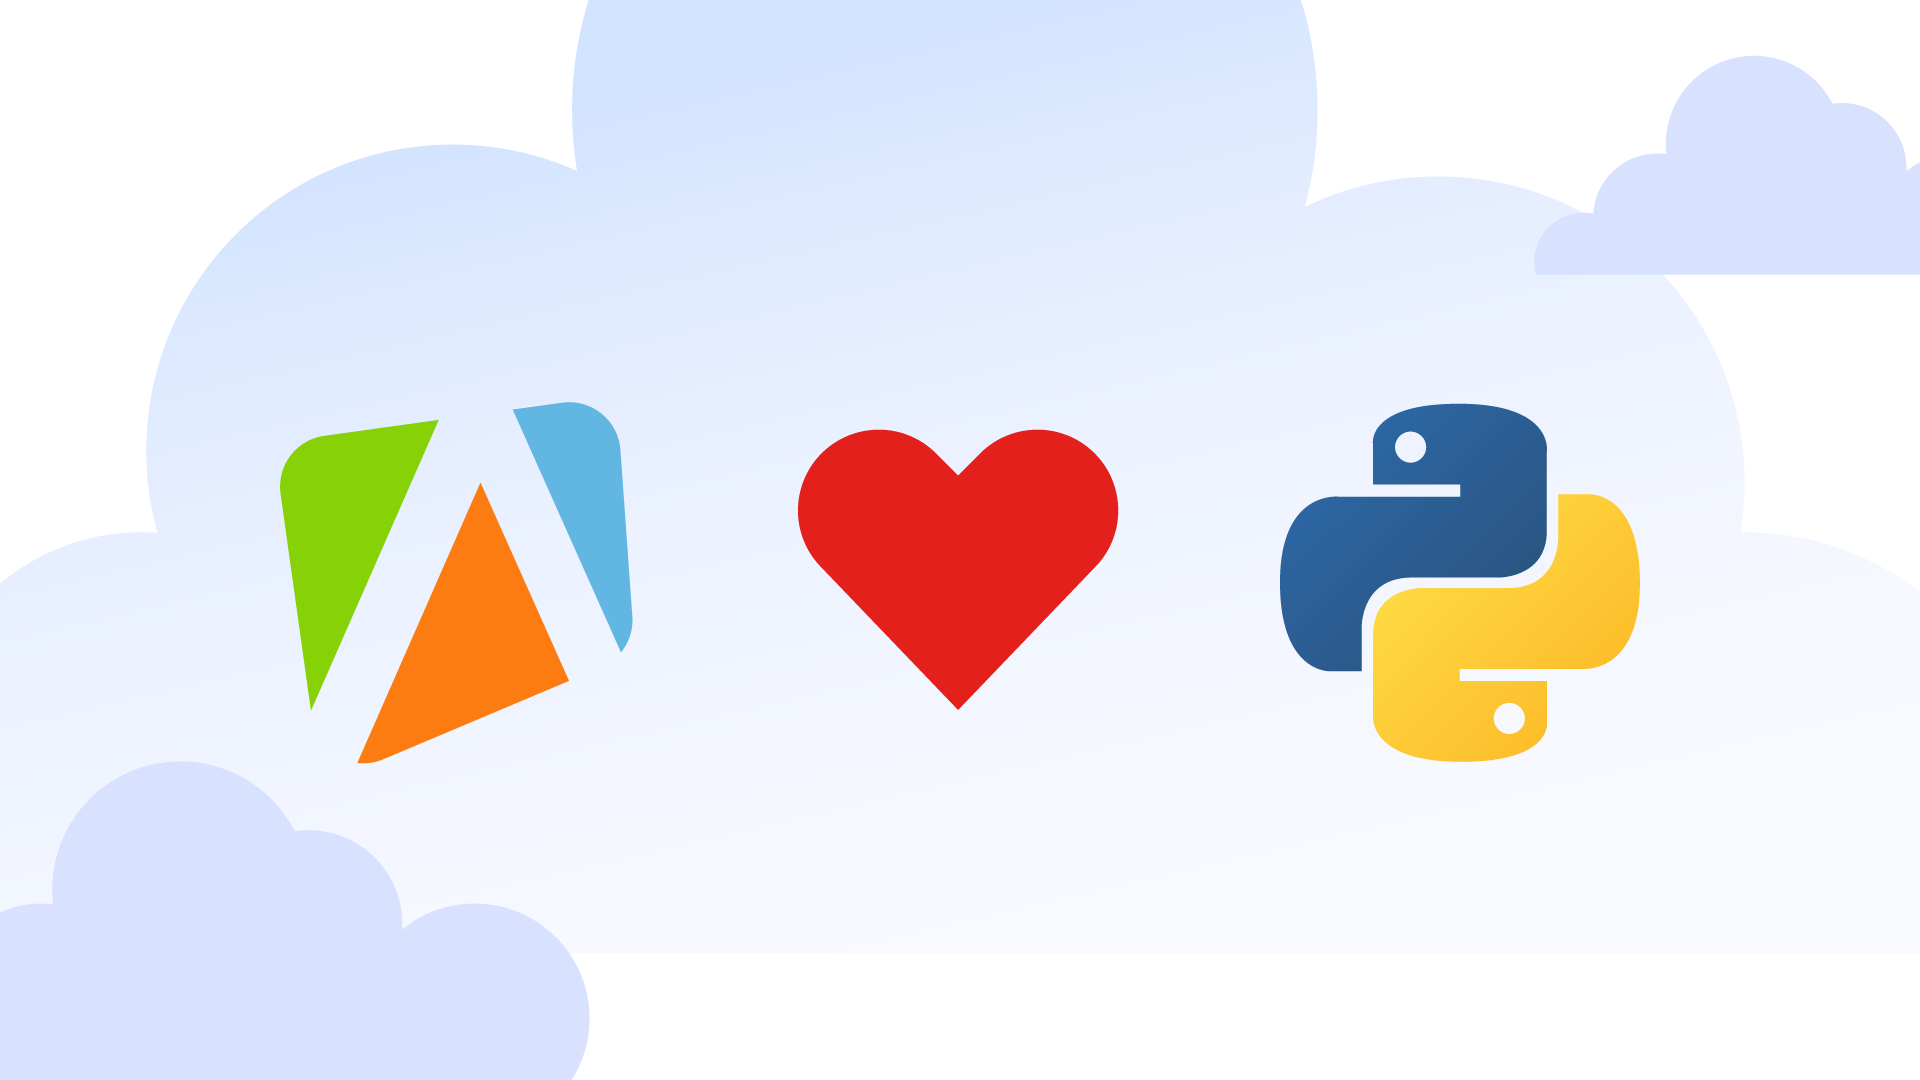 Apify ❤️ Python, so we’re releasing a Python API client